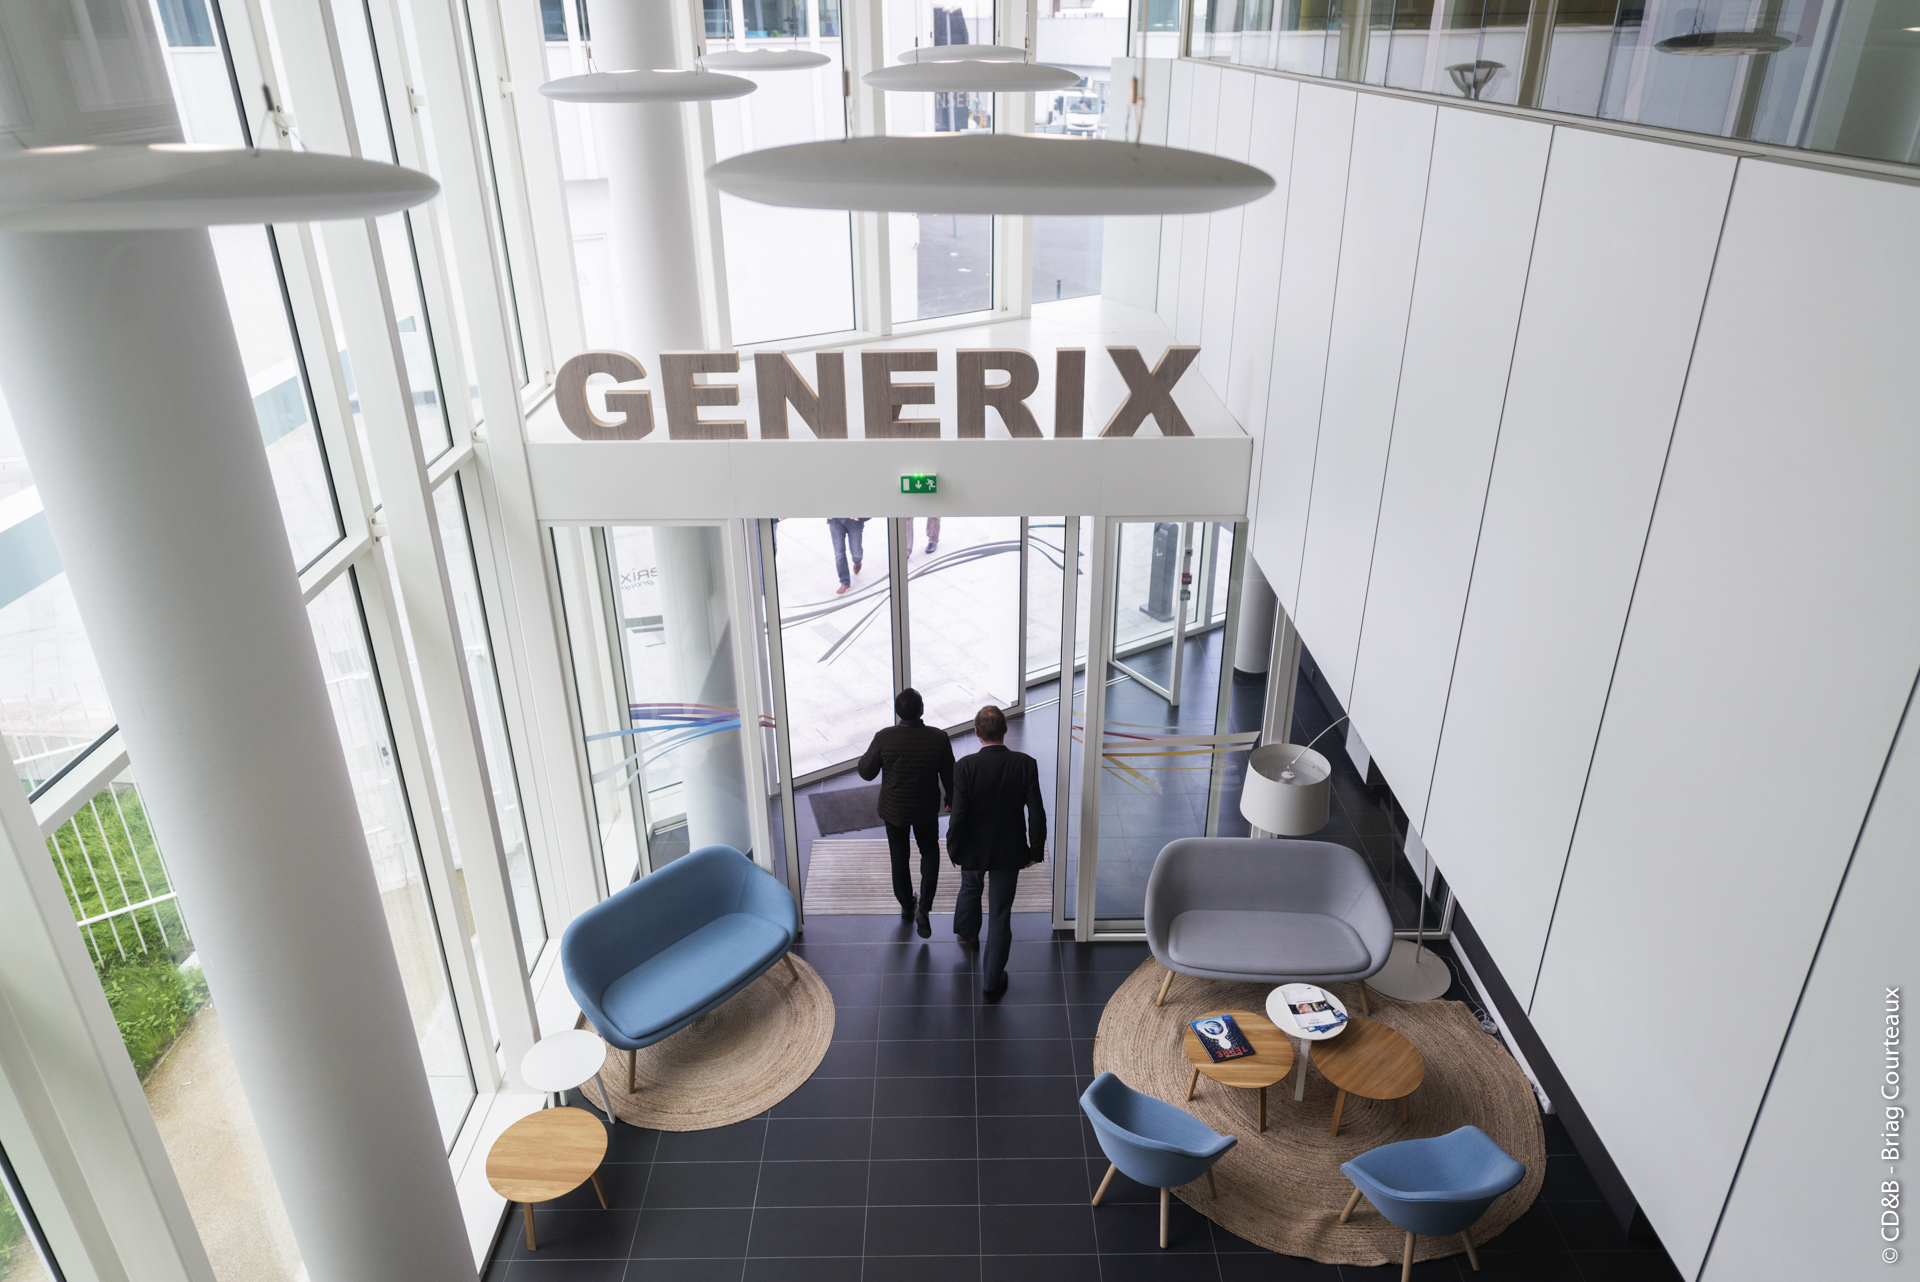 Conseil, aménagement, conception et réalisation des espaces de travail chez Generix par CDB, Meet you there.